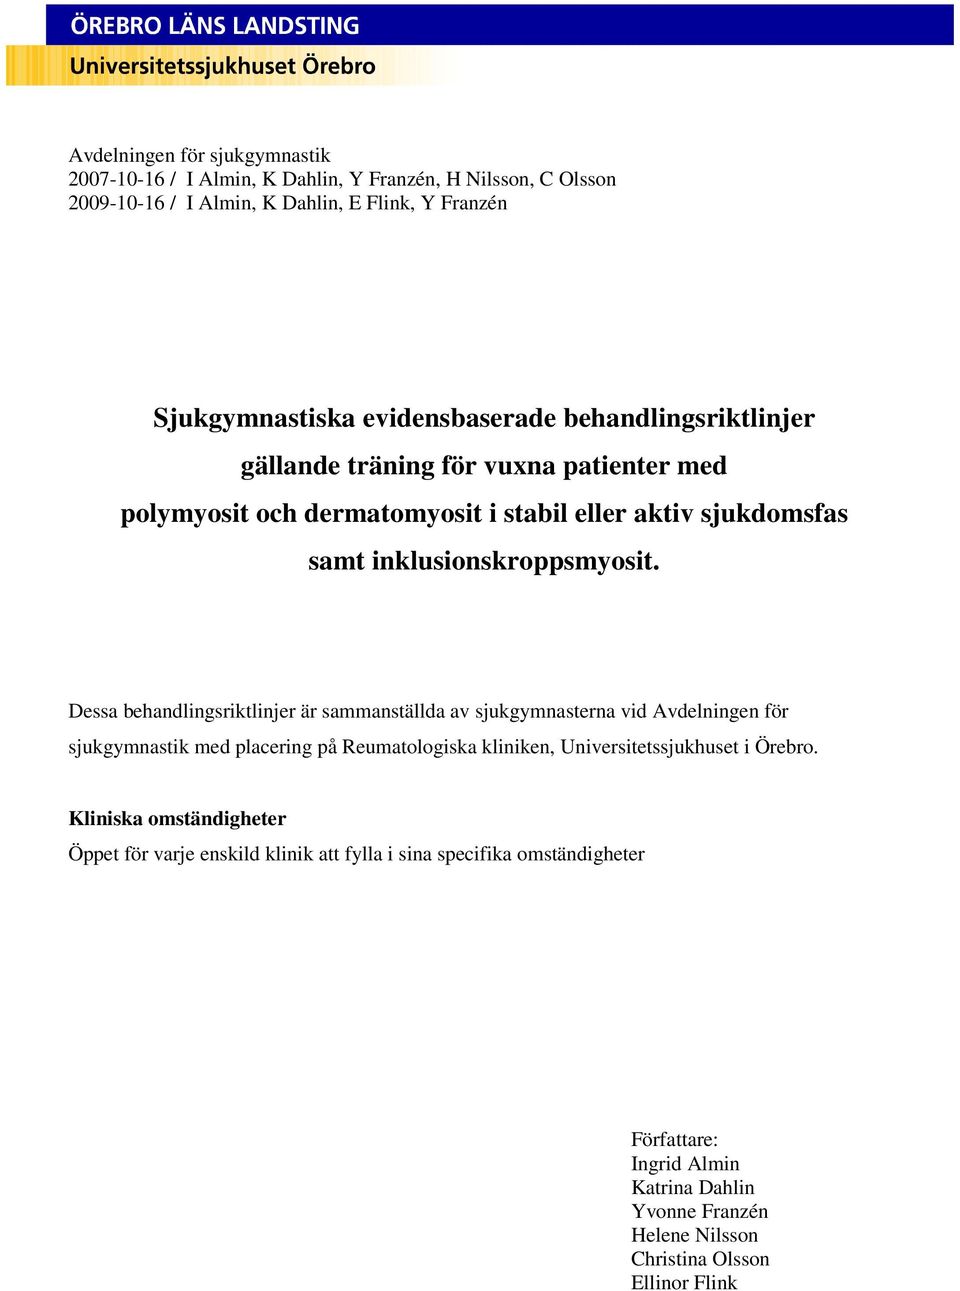 Dessa behandlingsriktlinjer är sammanställda av sjukgymnasterna vid Avdelningen för sjukgymnastik med placering på Reumatologiska kliniken, Universitetssjukhuset i Örebro.